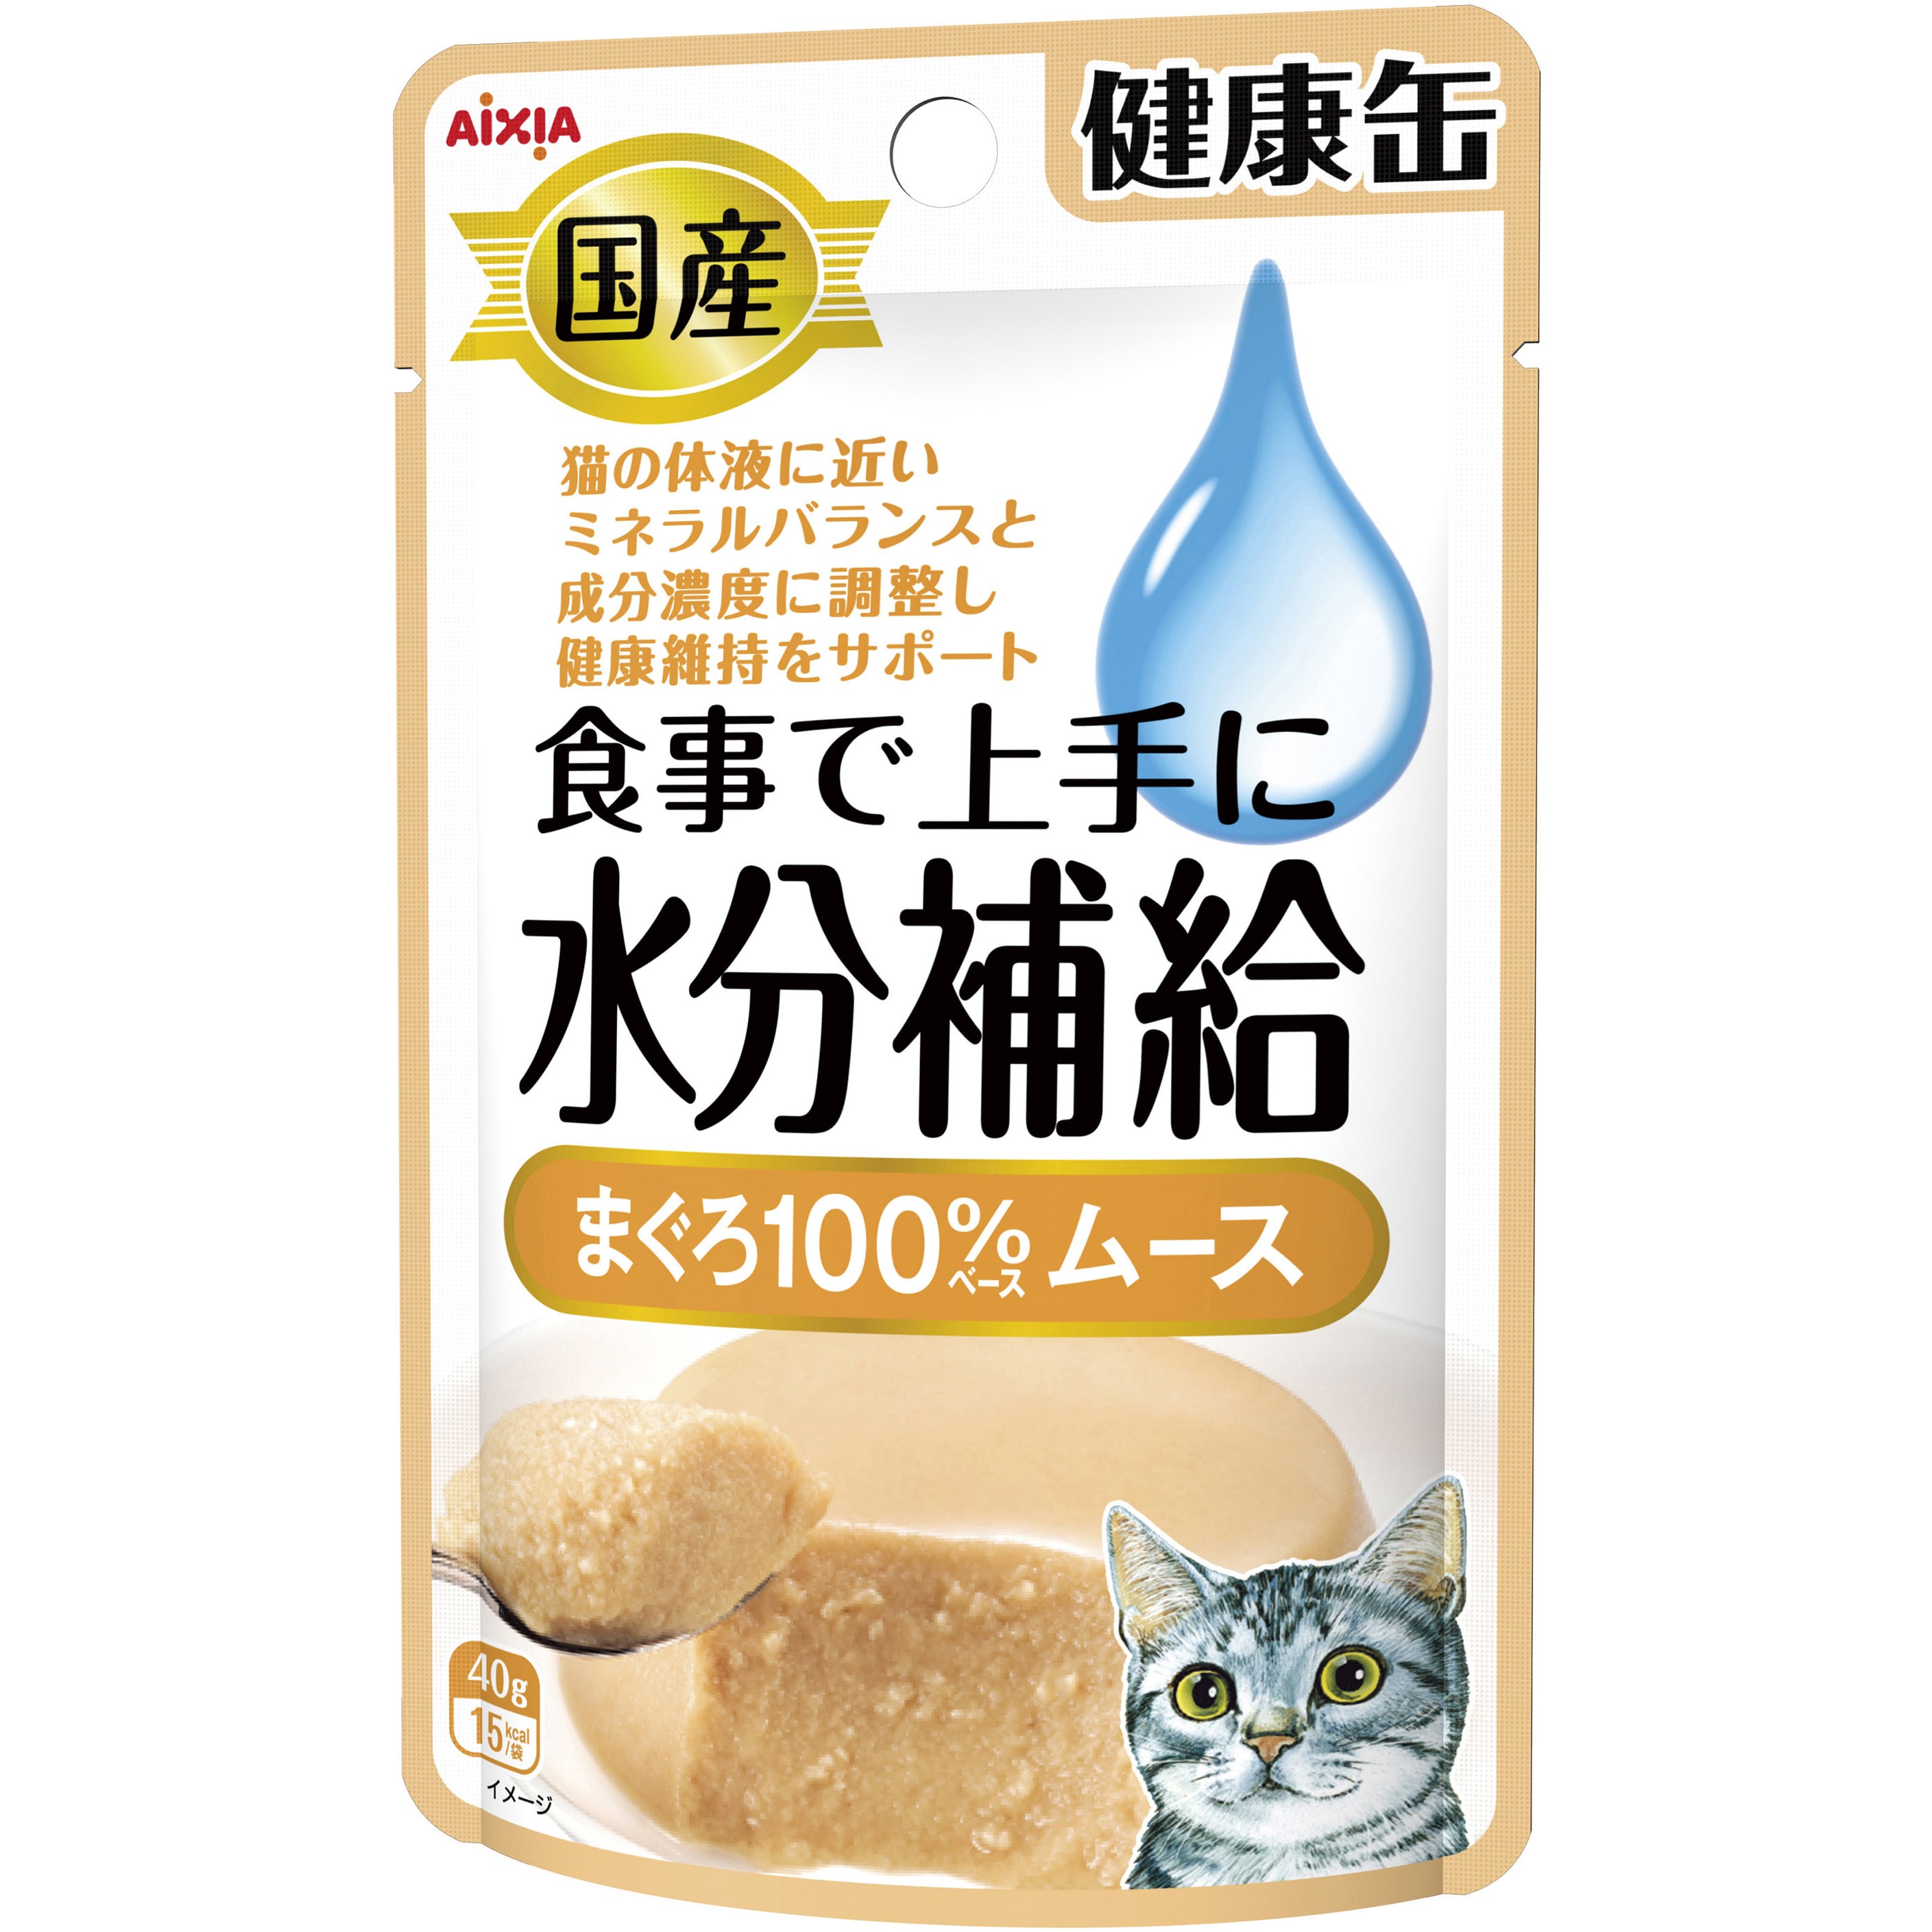 12770 国産 健康缶パウチ 水分補給 1個(40g) アイシア 【通販サイト